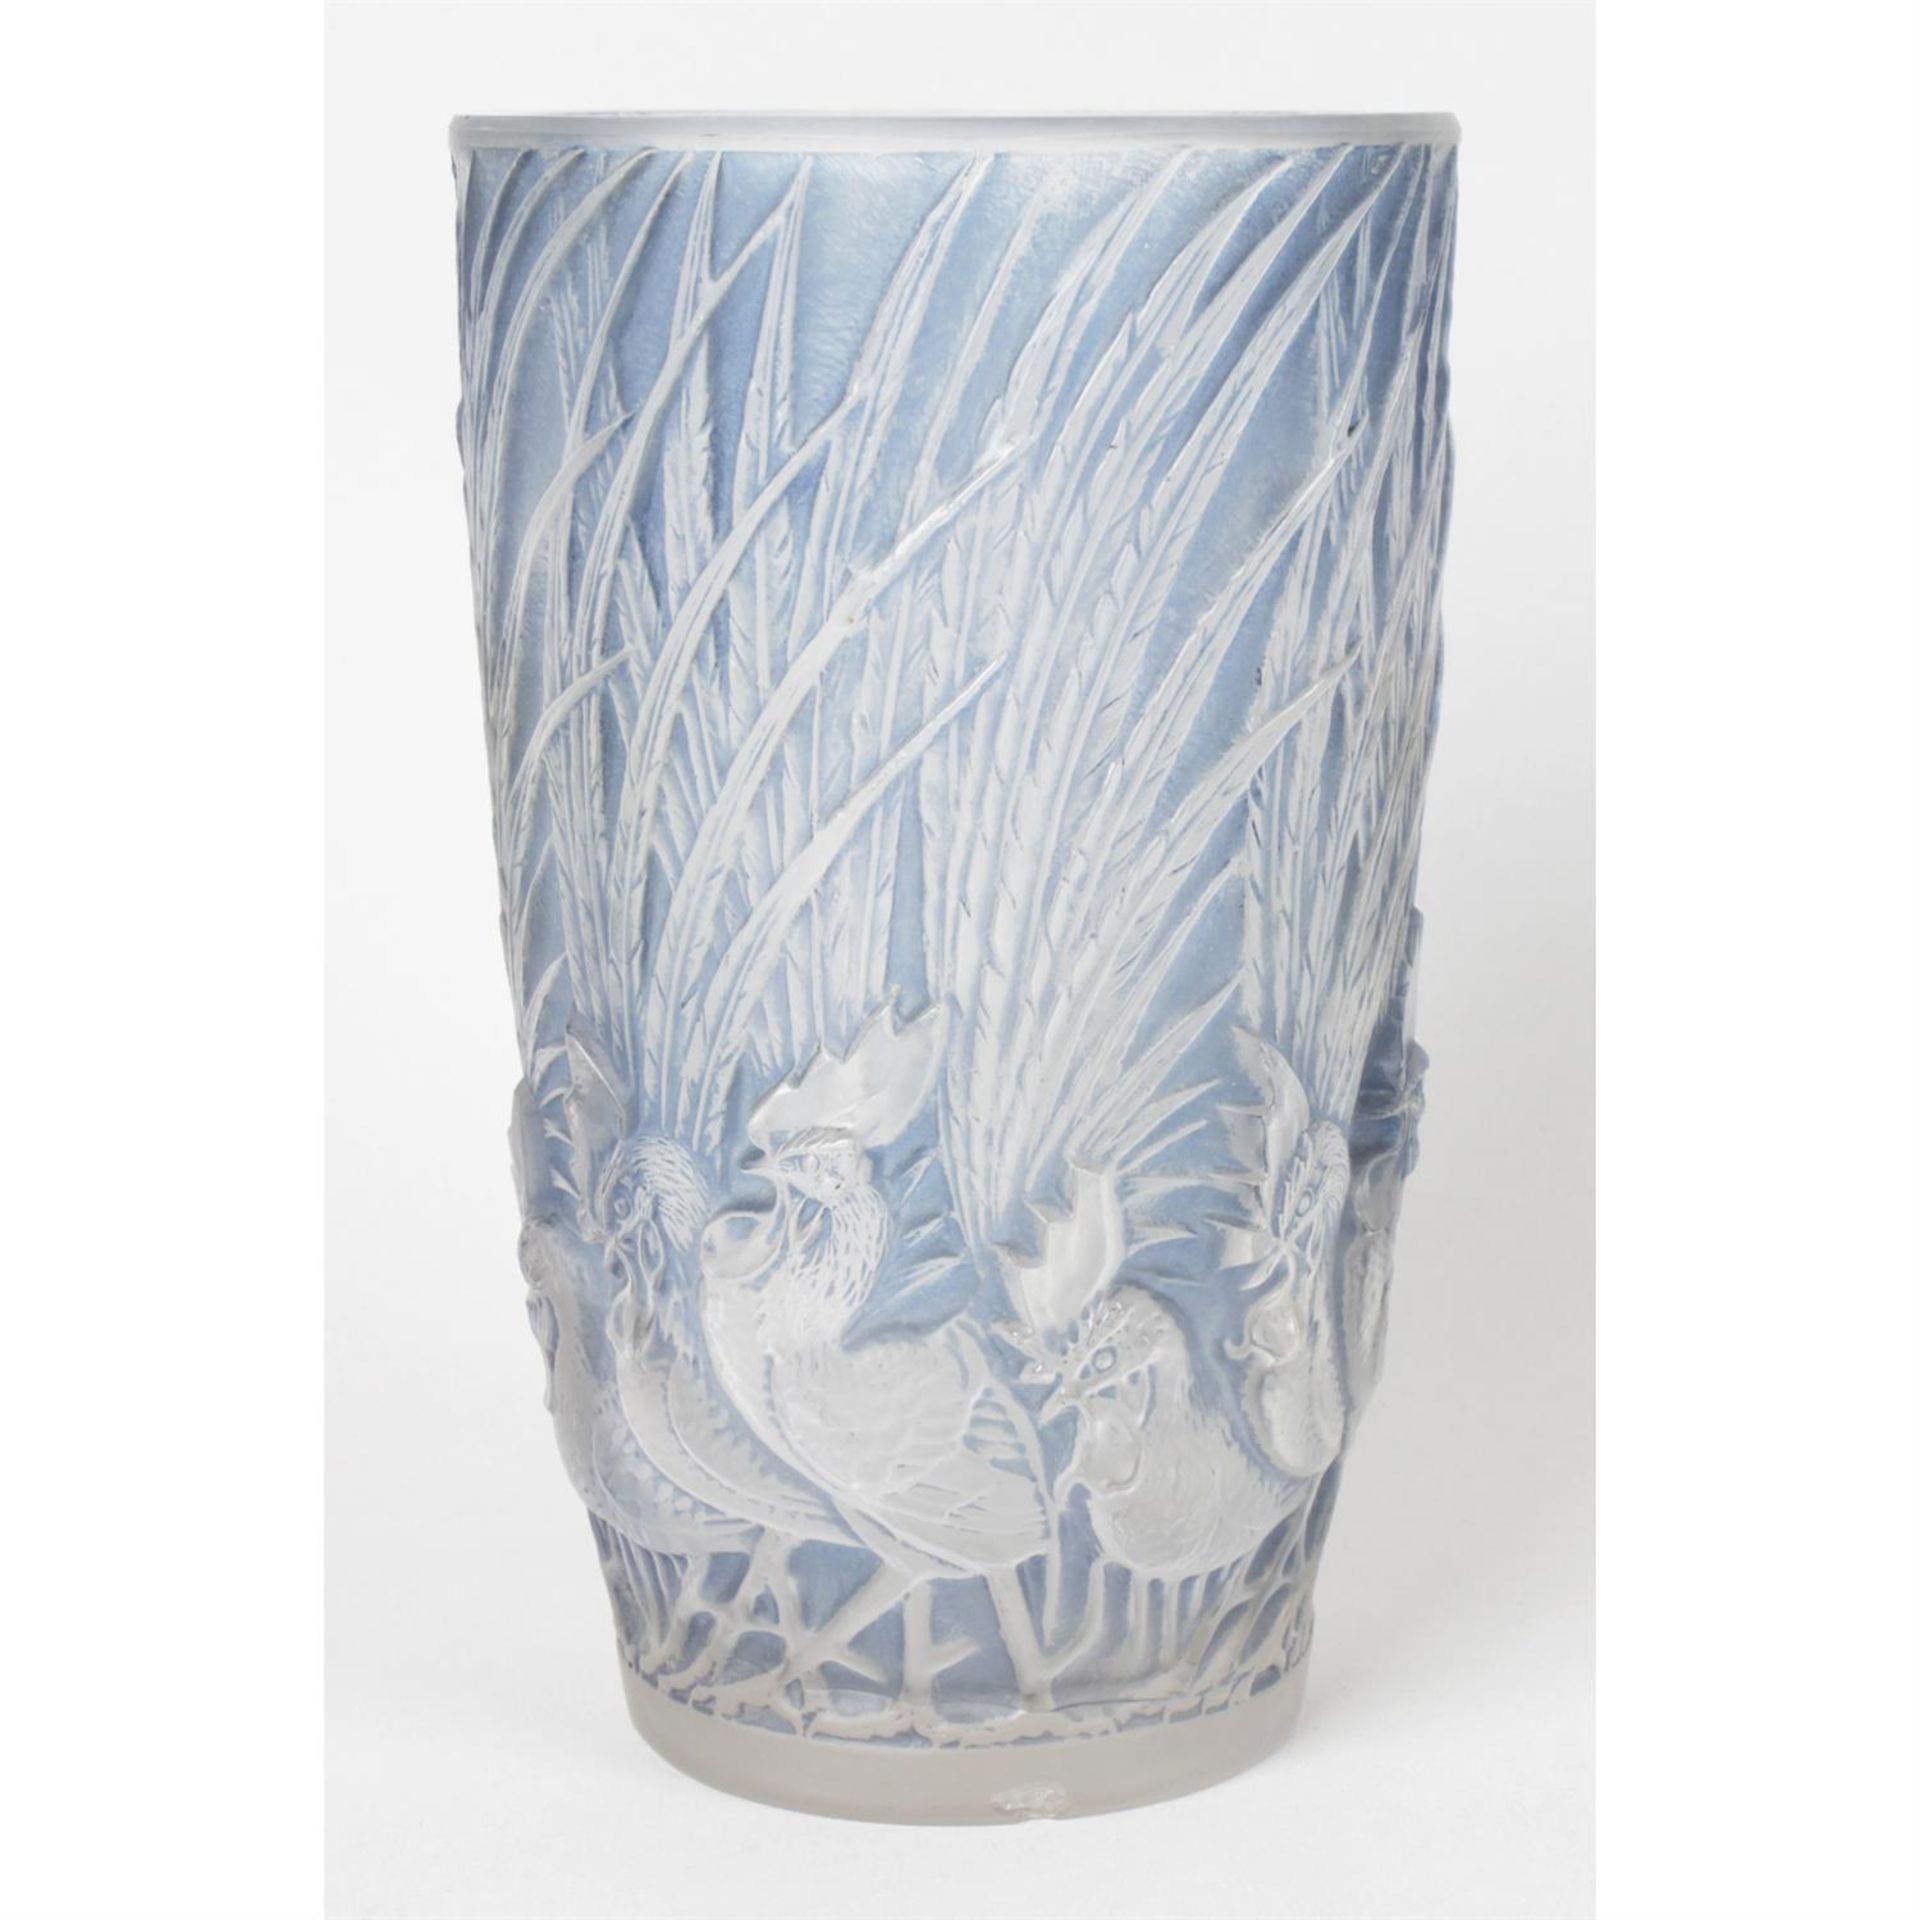 An R Lalique Coqs et Plumes glass vase.